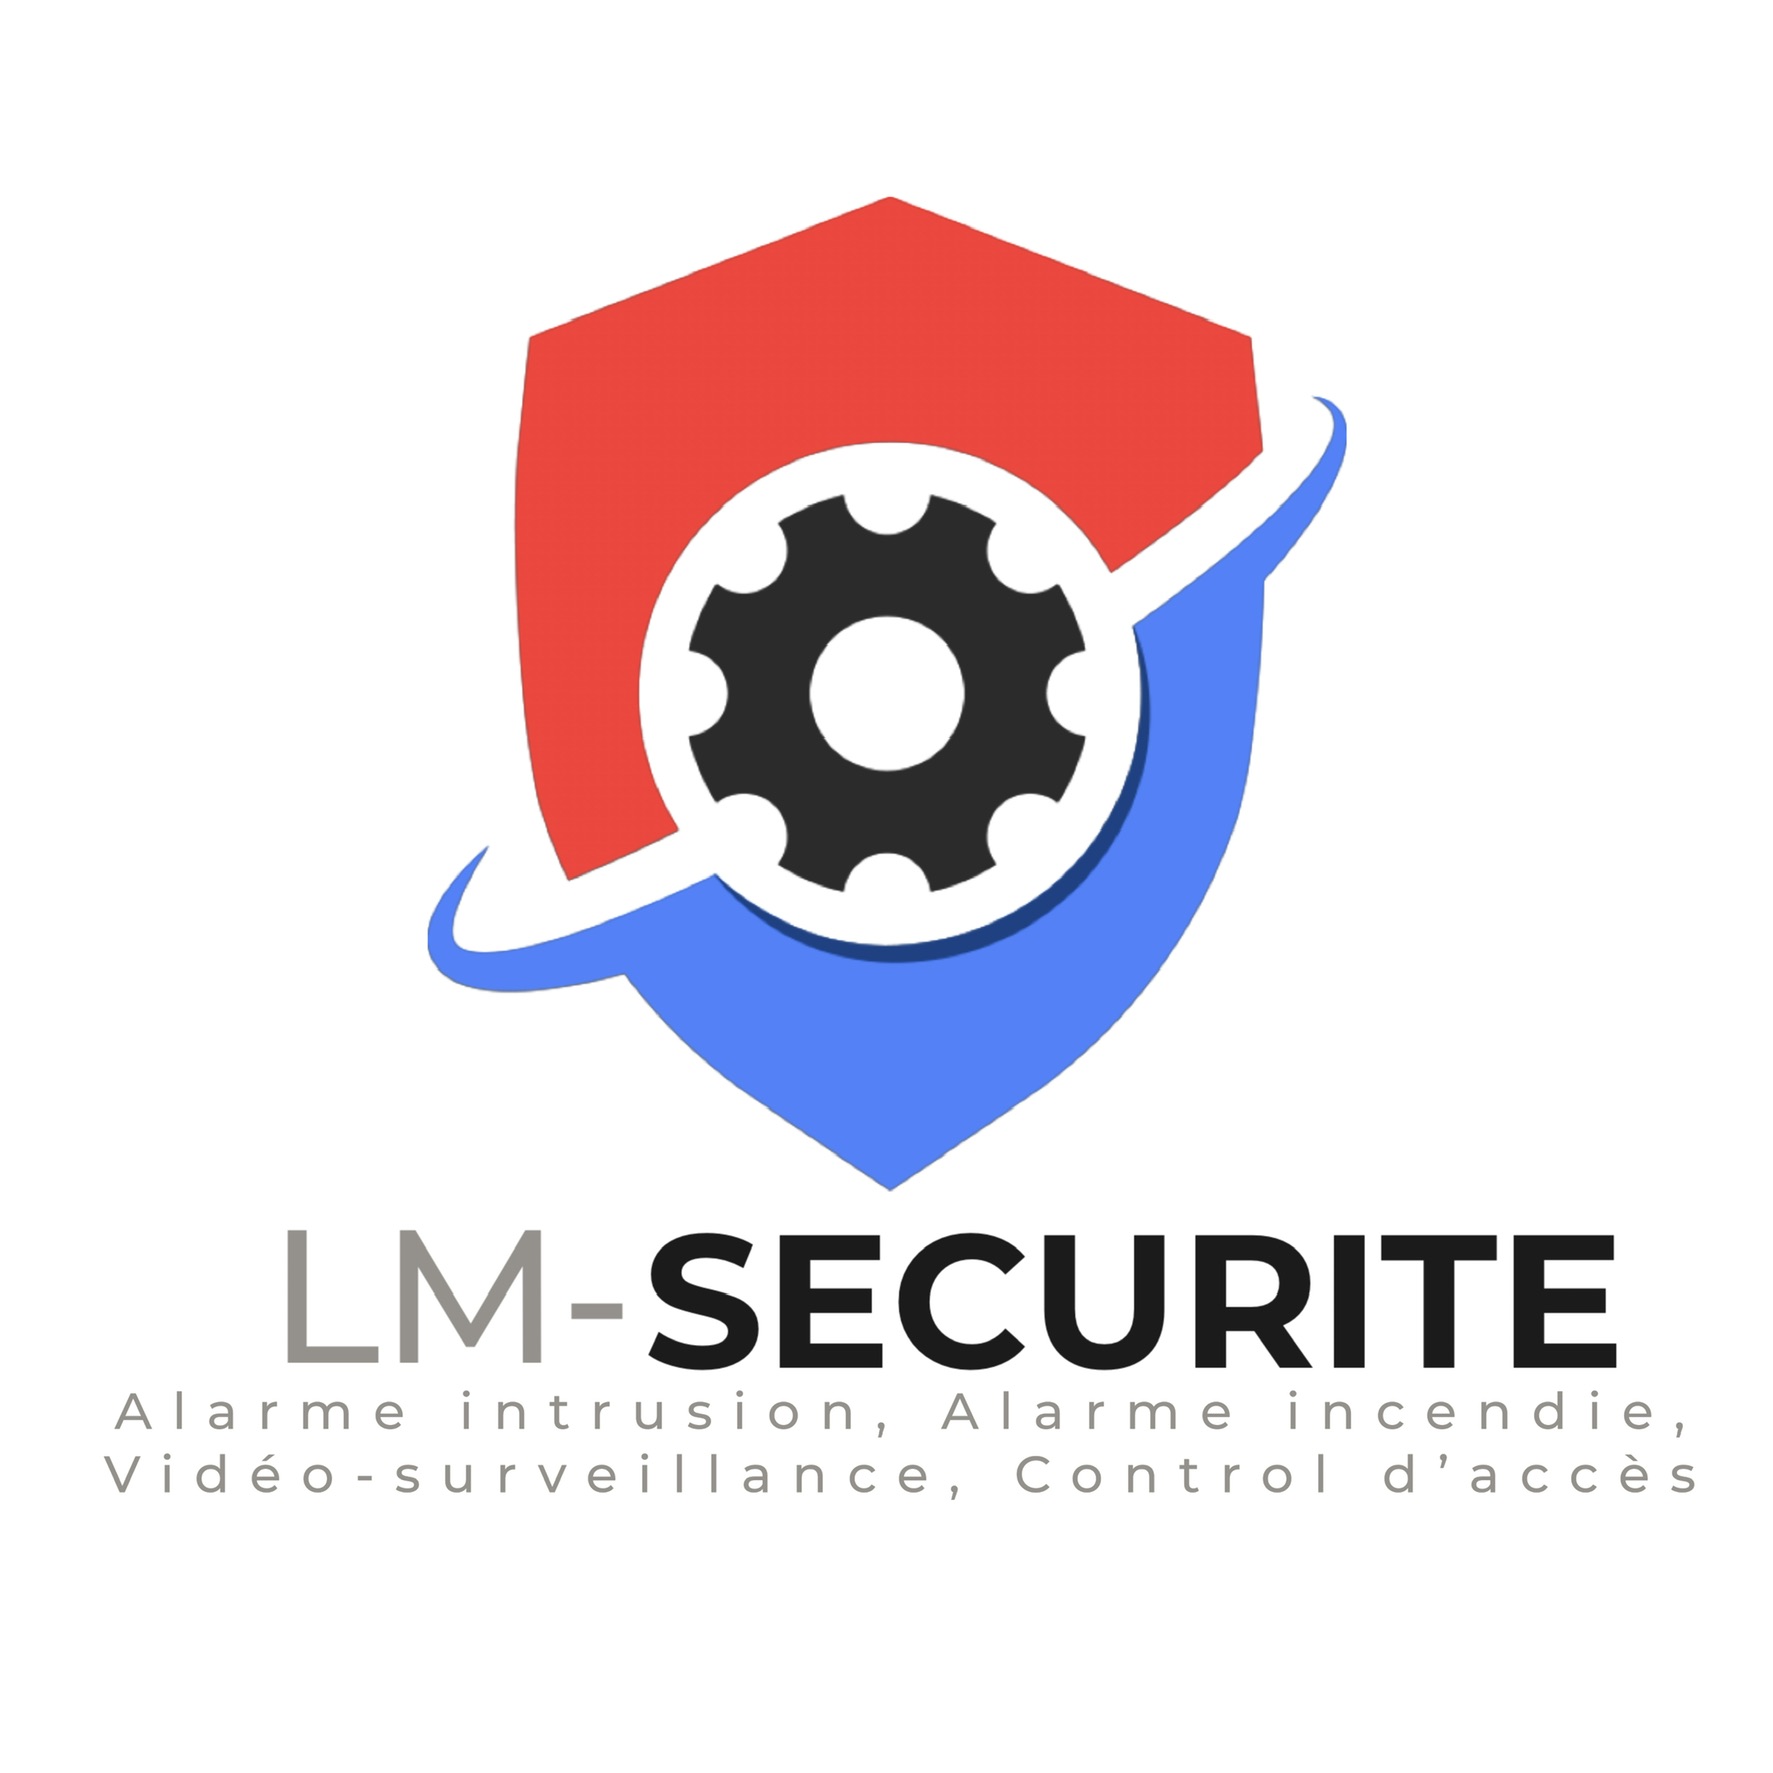 LM-SECURITE